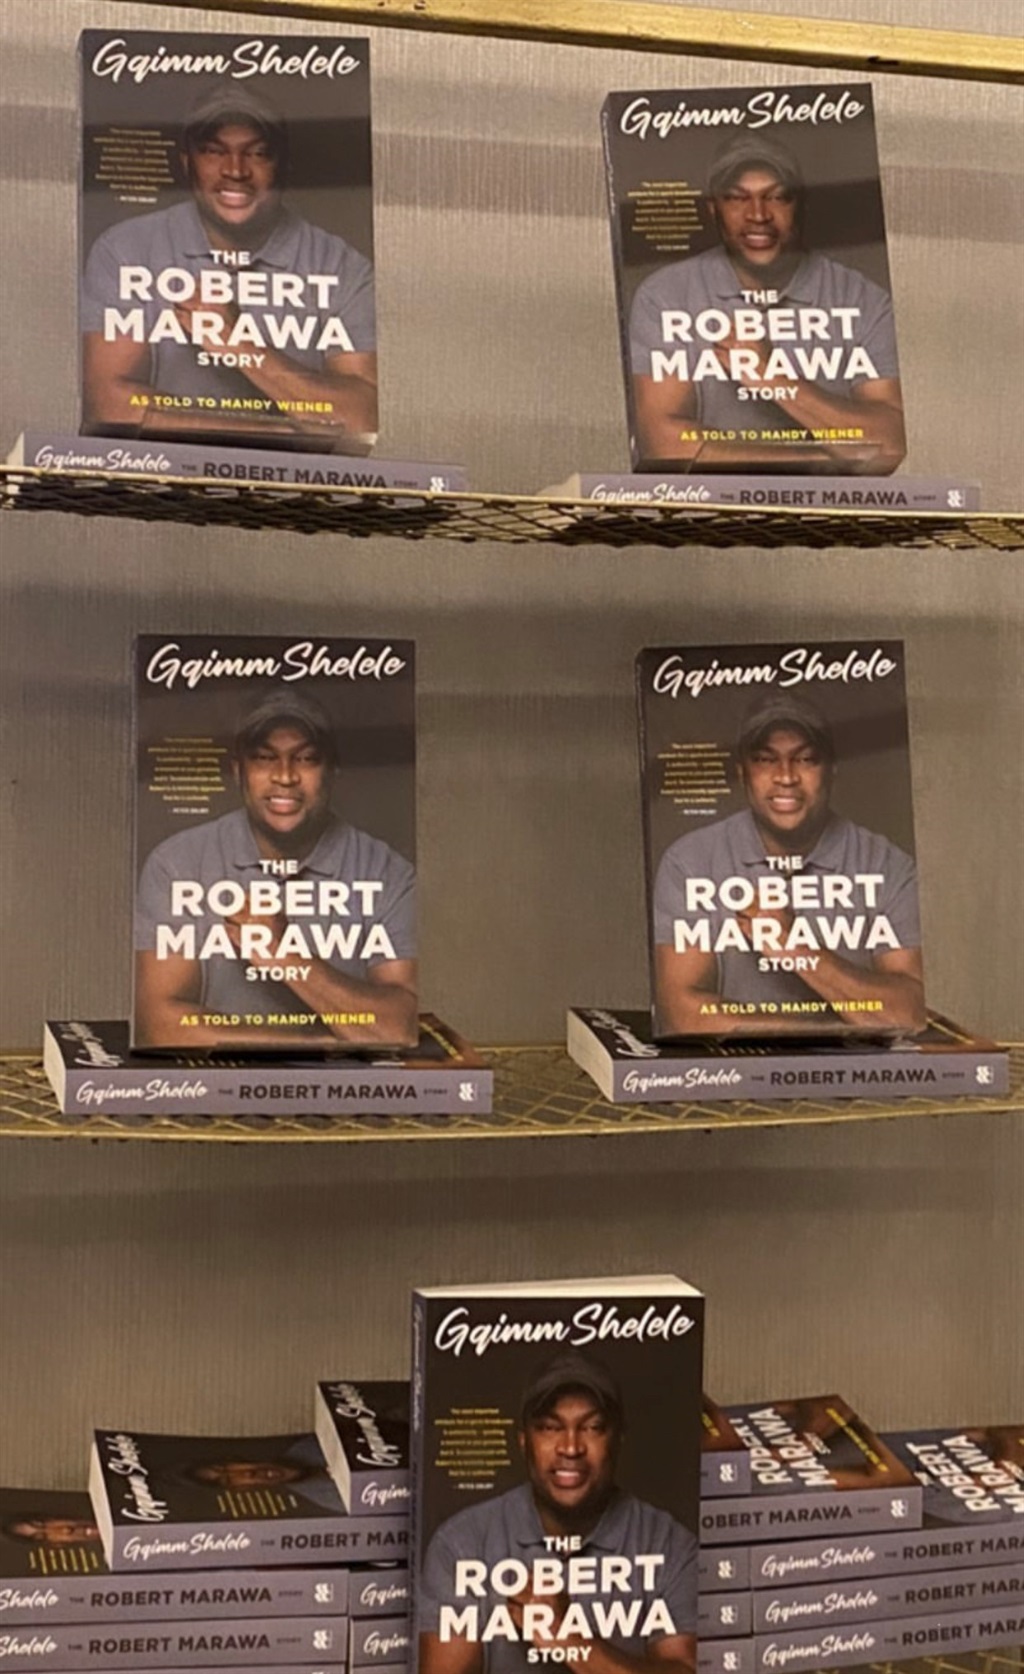 The cover of Robert Marawa's memoir.